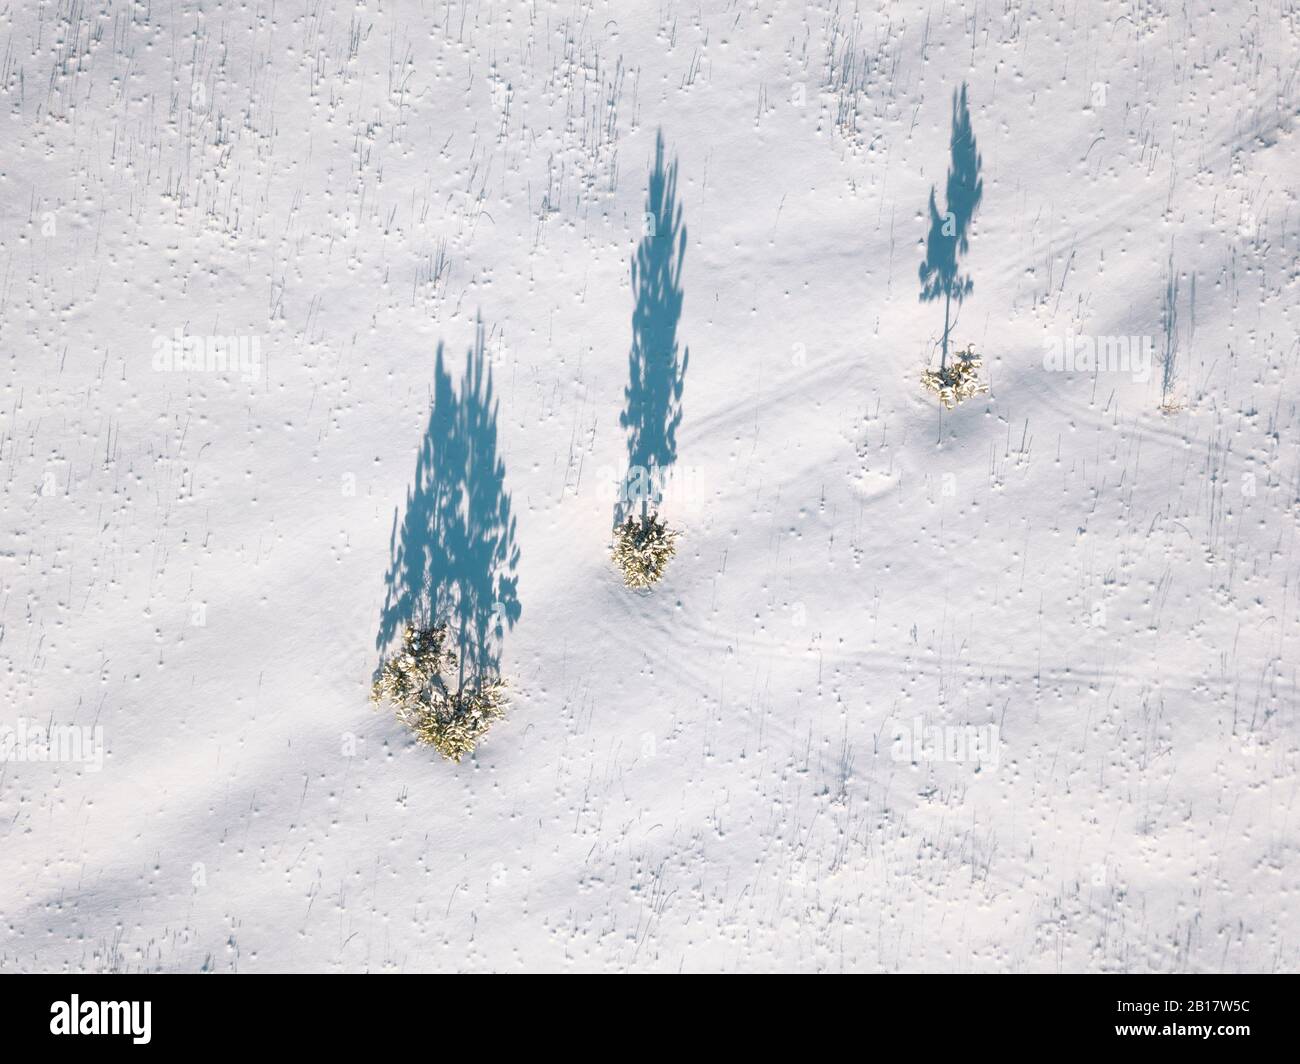 Russia, Oblast di Leningrado, Tikhvin, veduta aerea di un mucchio di alberi che gettano ombre su un terreno coperto di neve Foto Stock